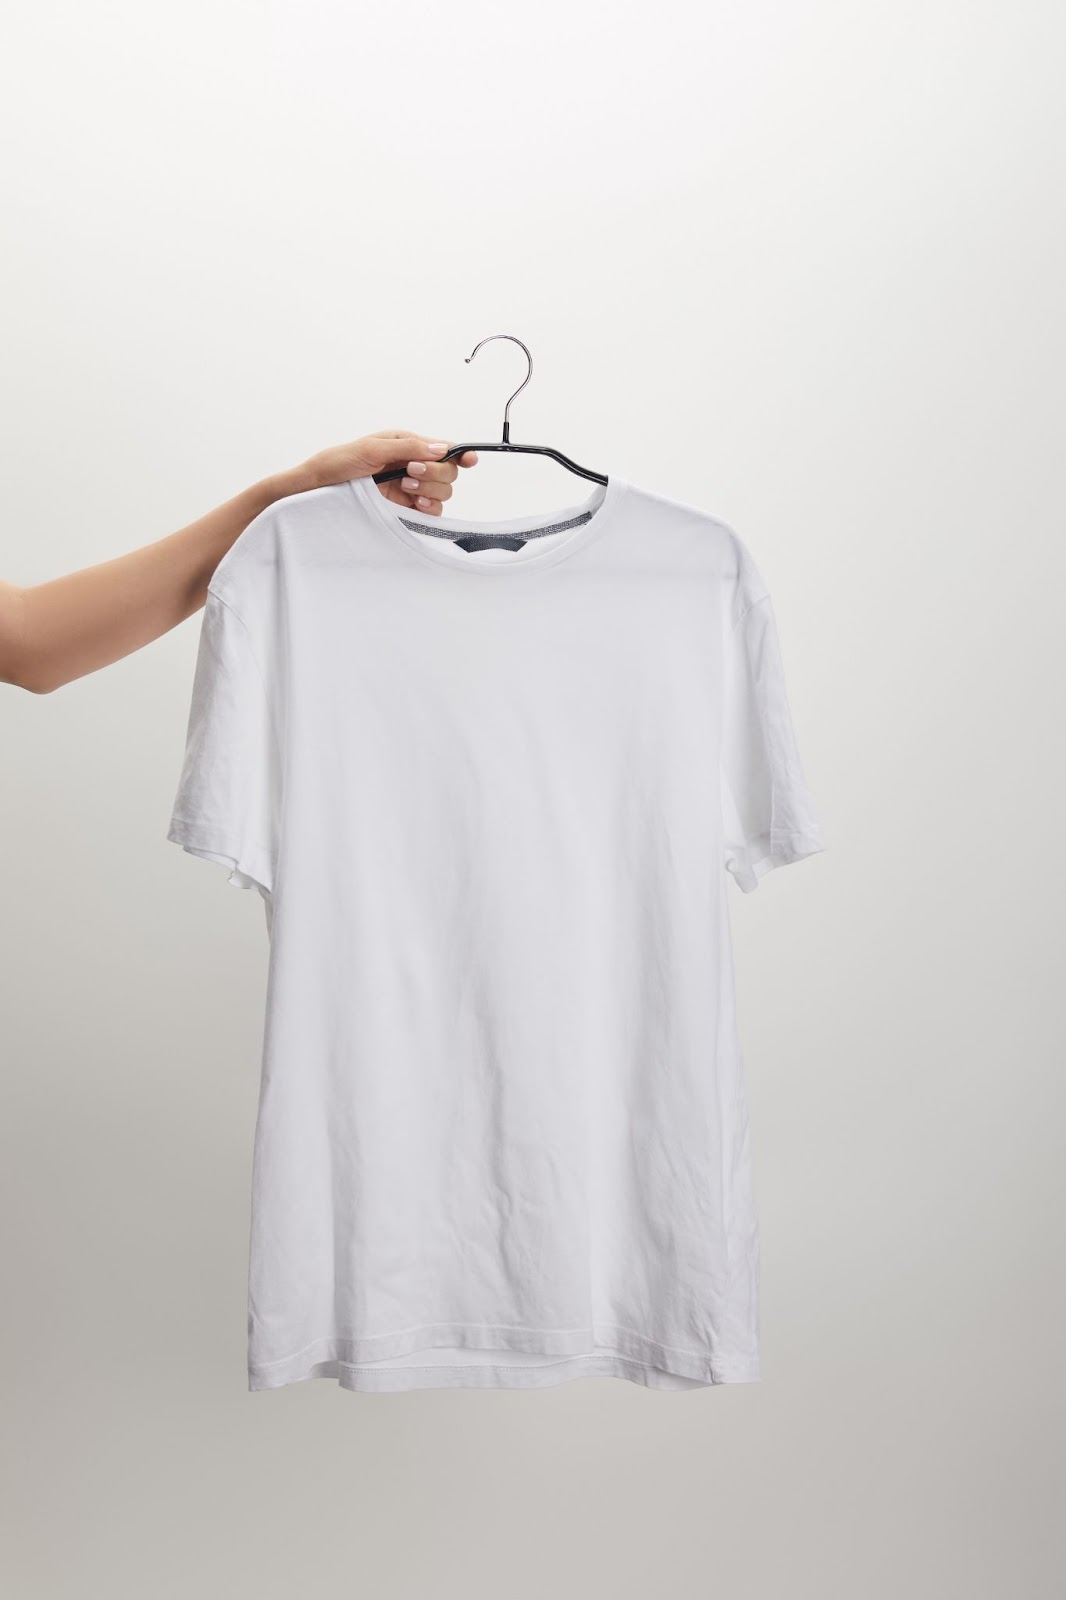 Мужские футболки: на что обратить внимание при выборе